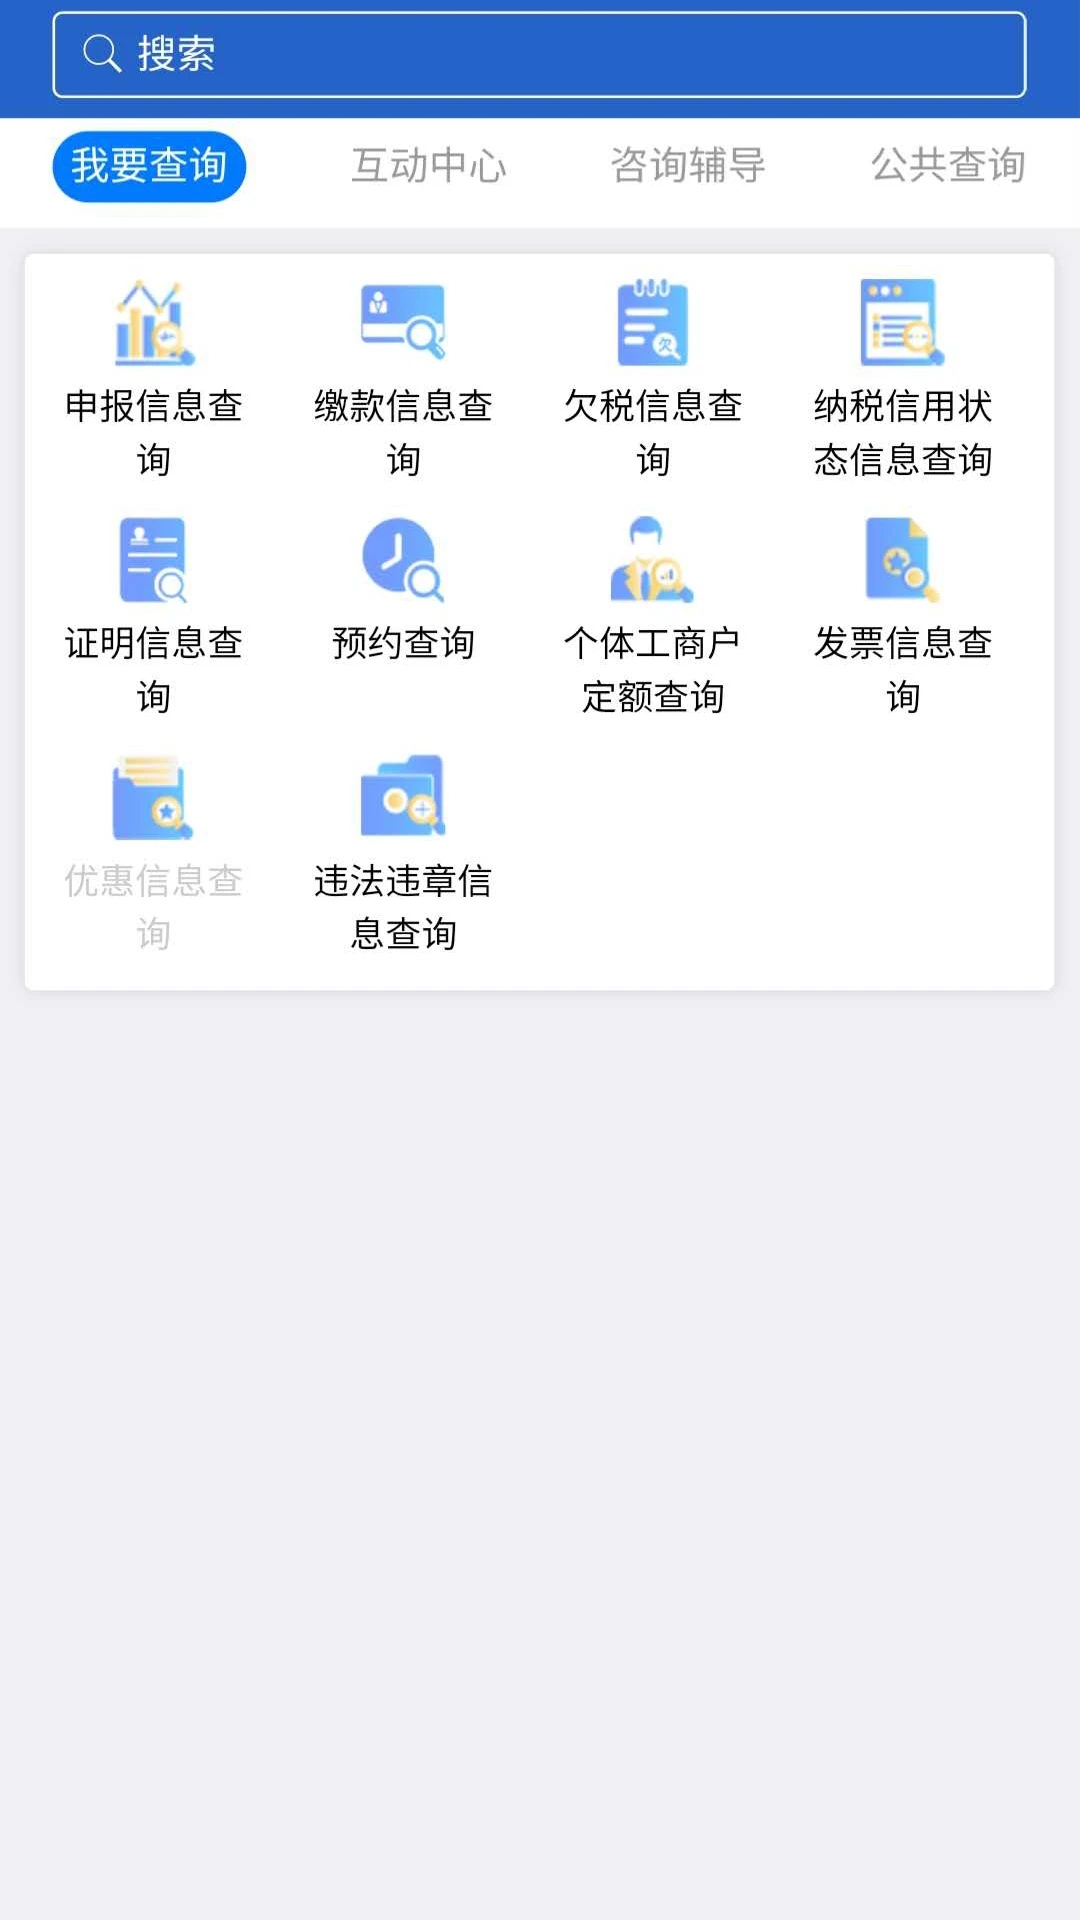 江苏国税电子税务局手机版